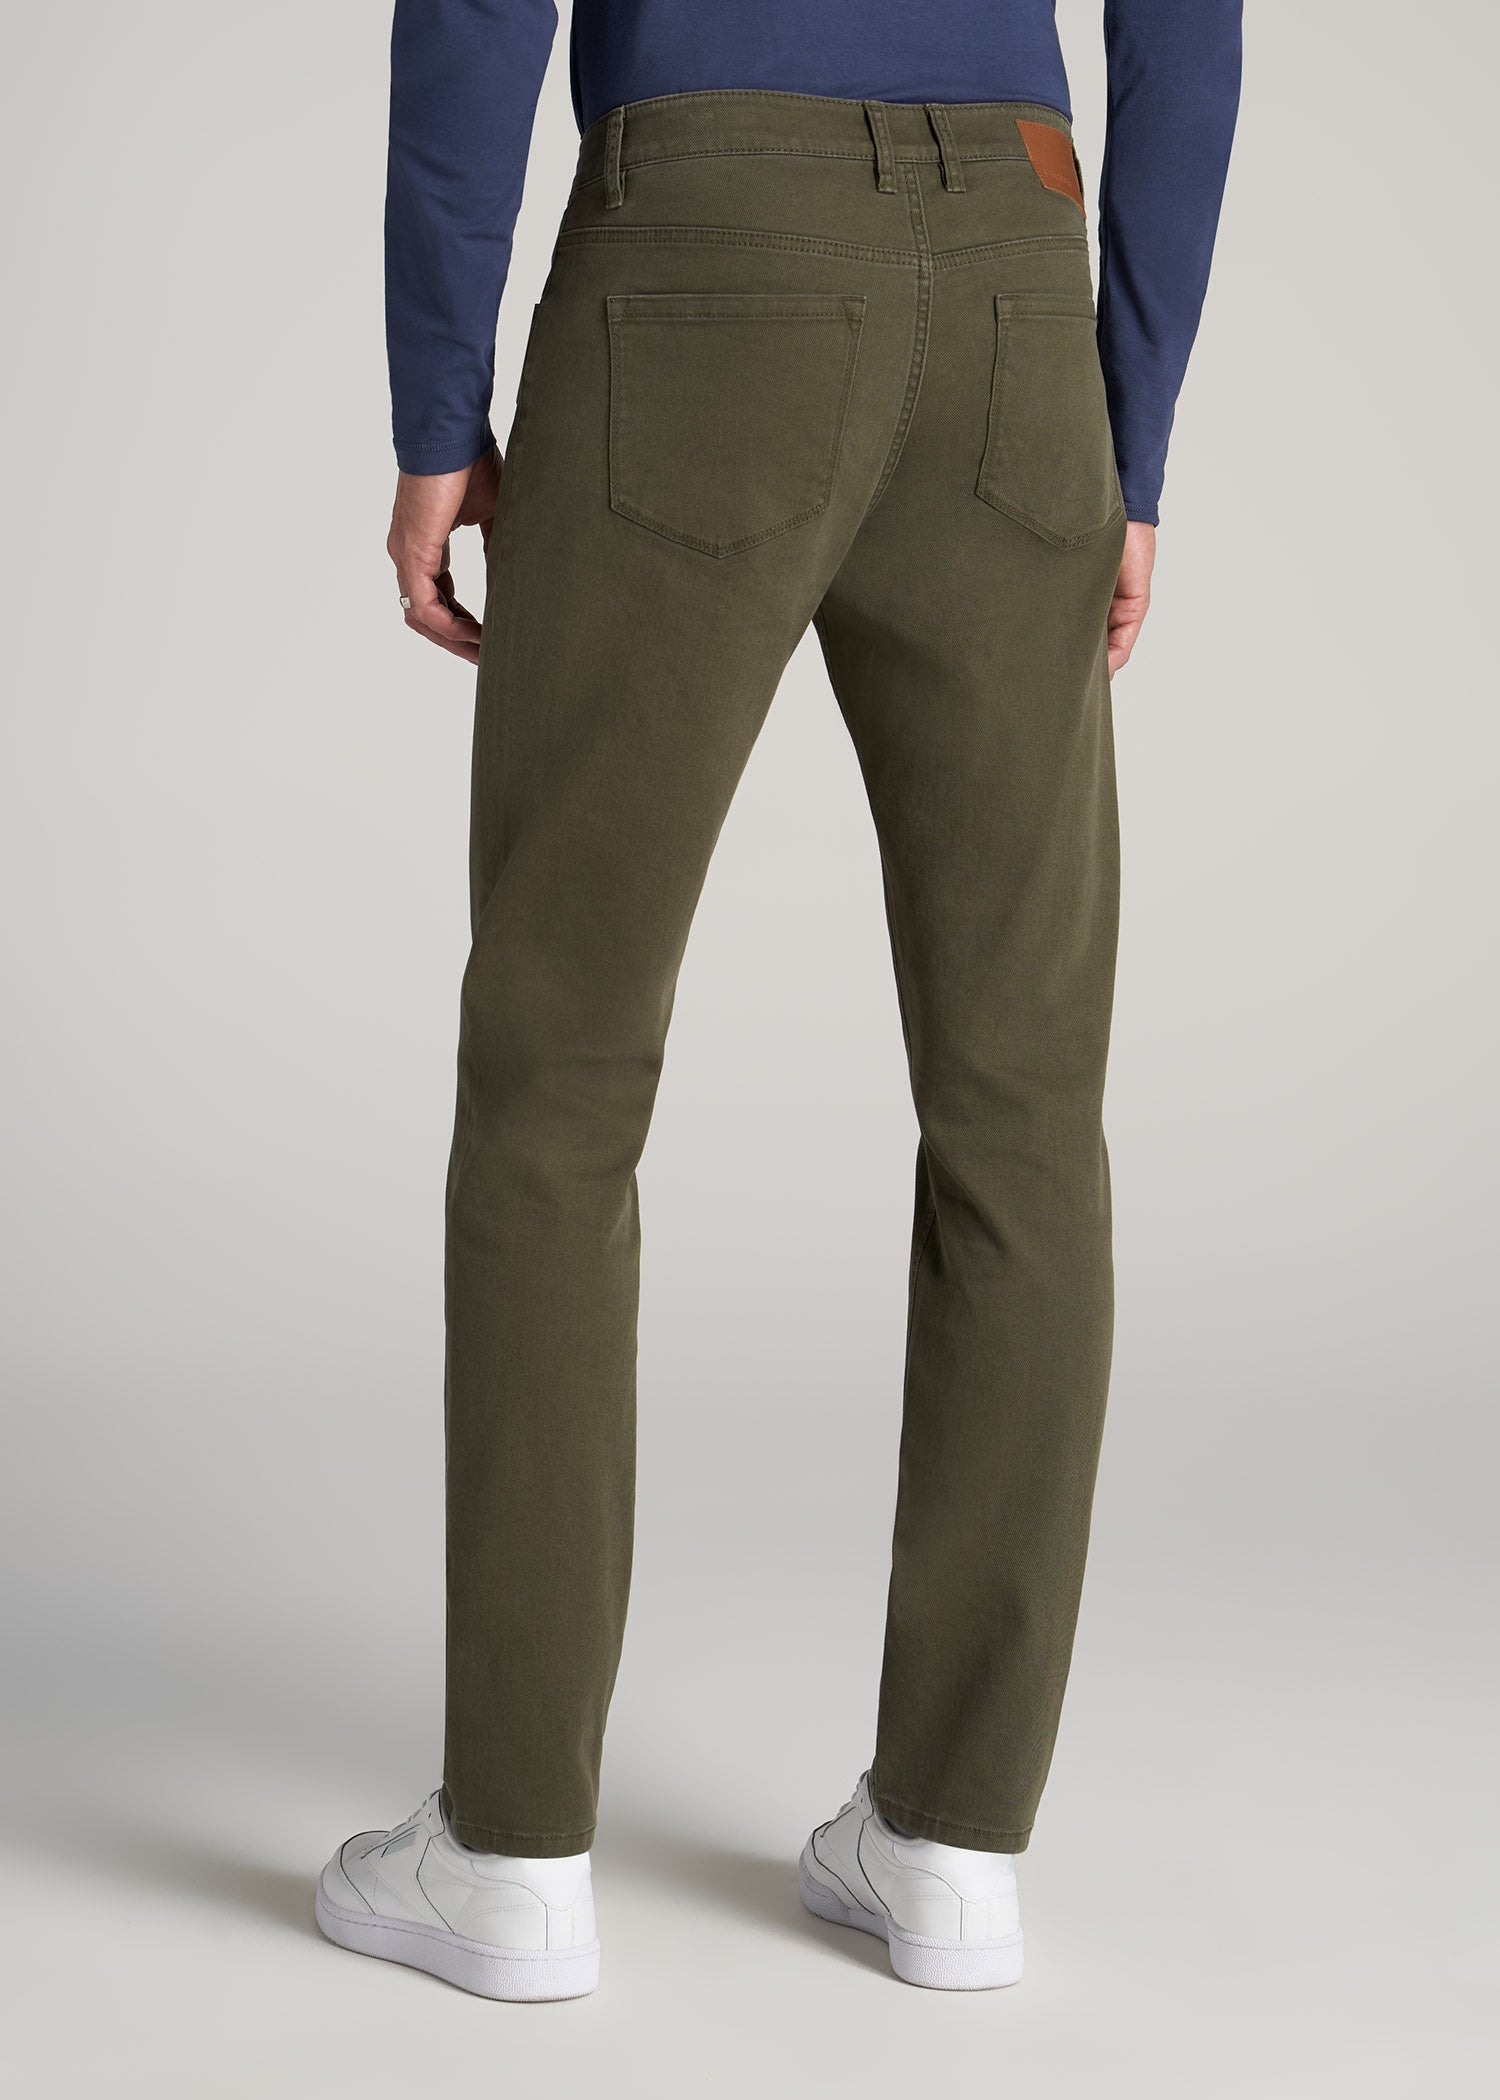 CLOT Men Dickies Pants Herringbone Olive ()